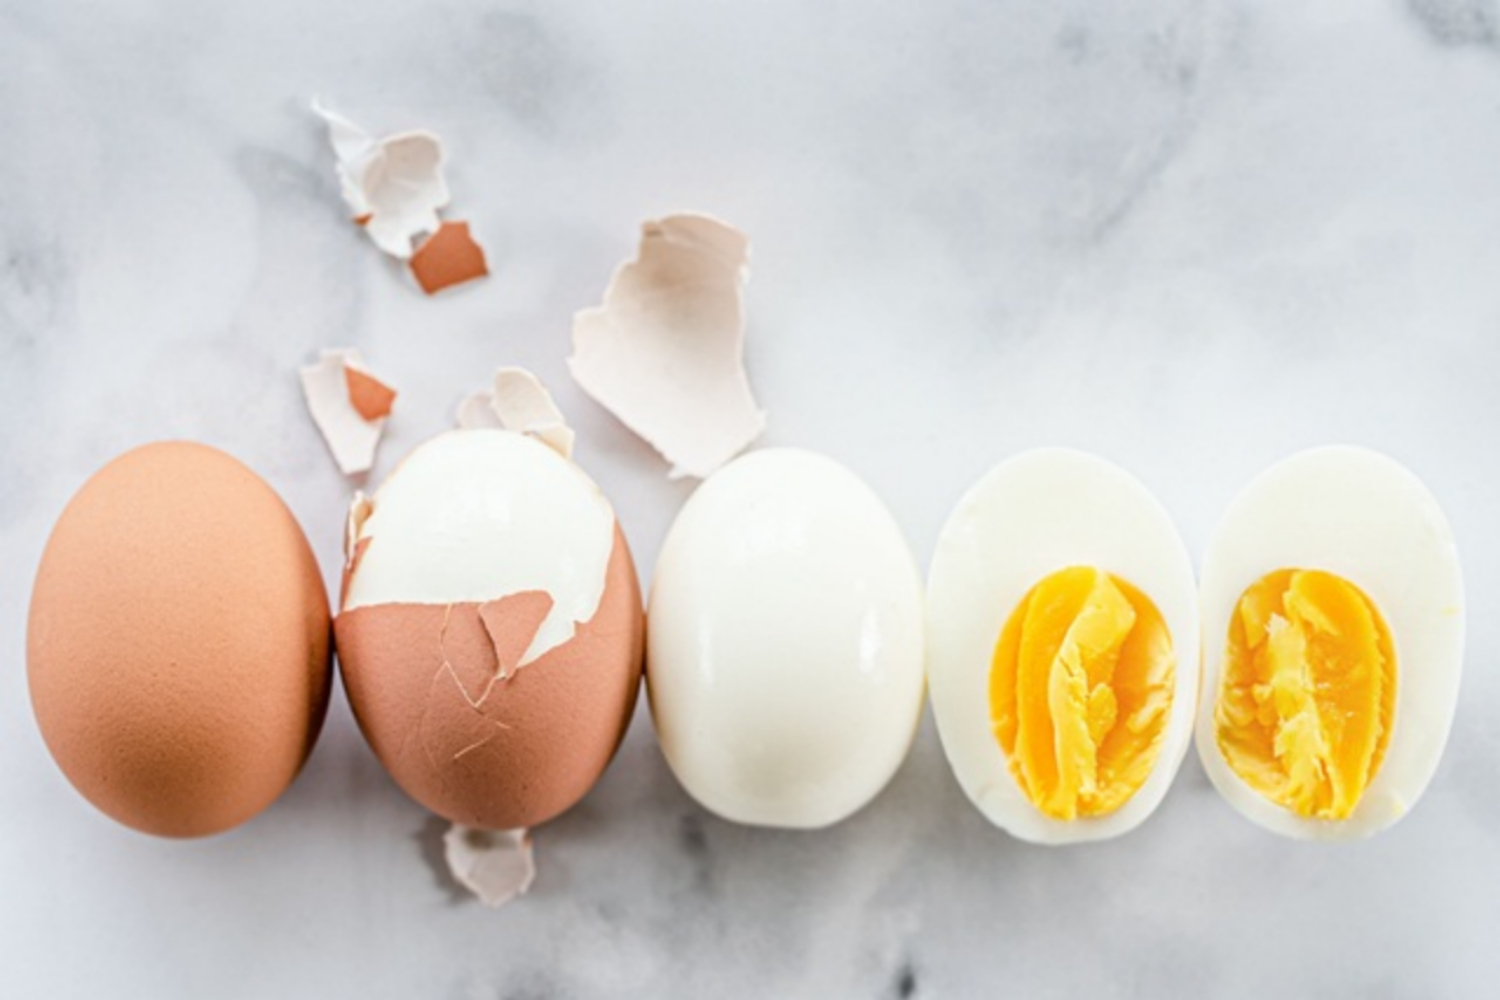 Trứng gà có lượng calo và protein bao nhiêu? - Giá trị dinh dưỡng của trứng gà